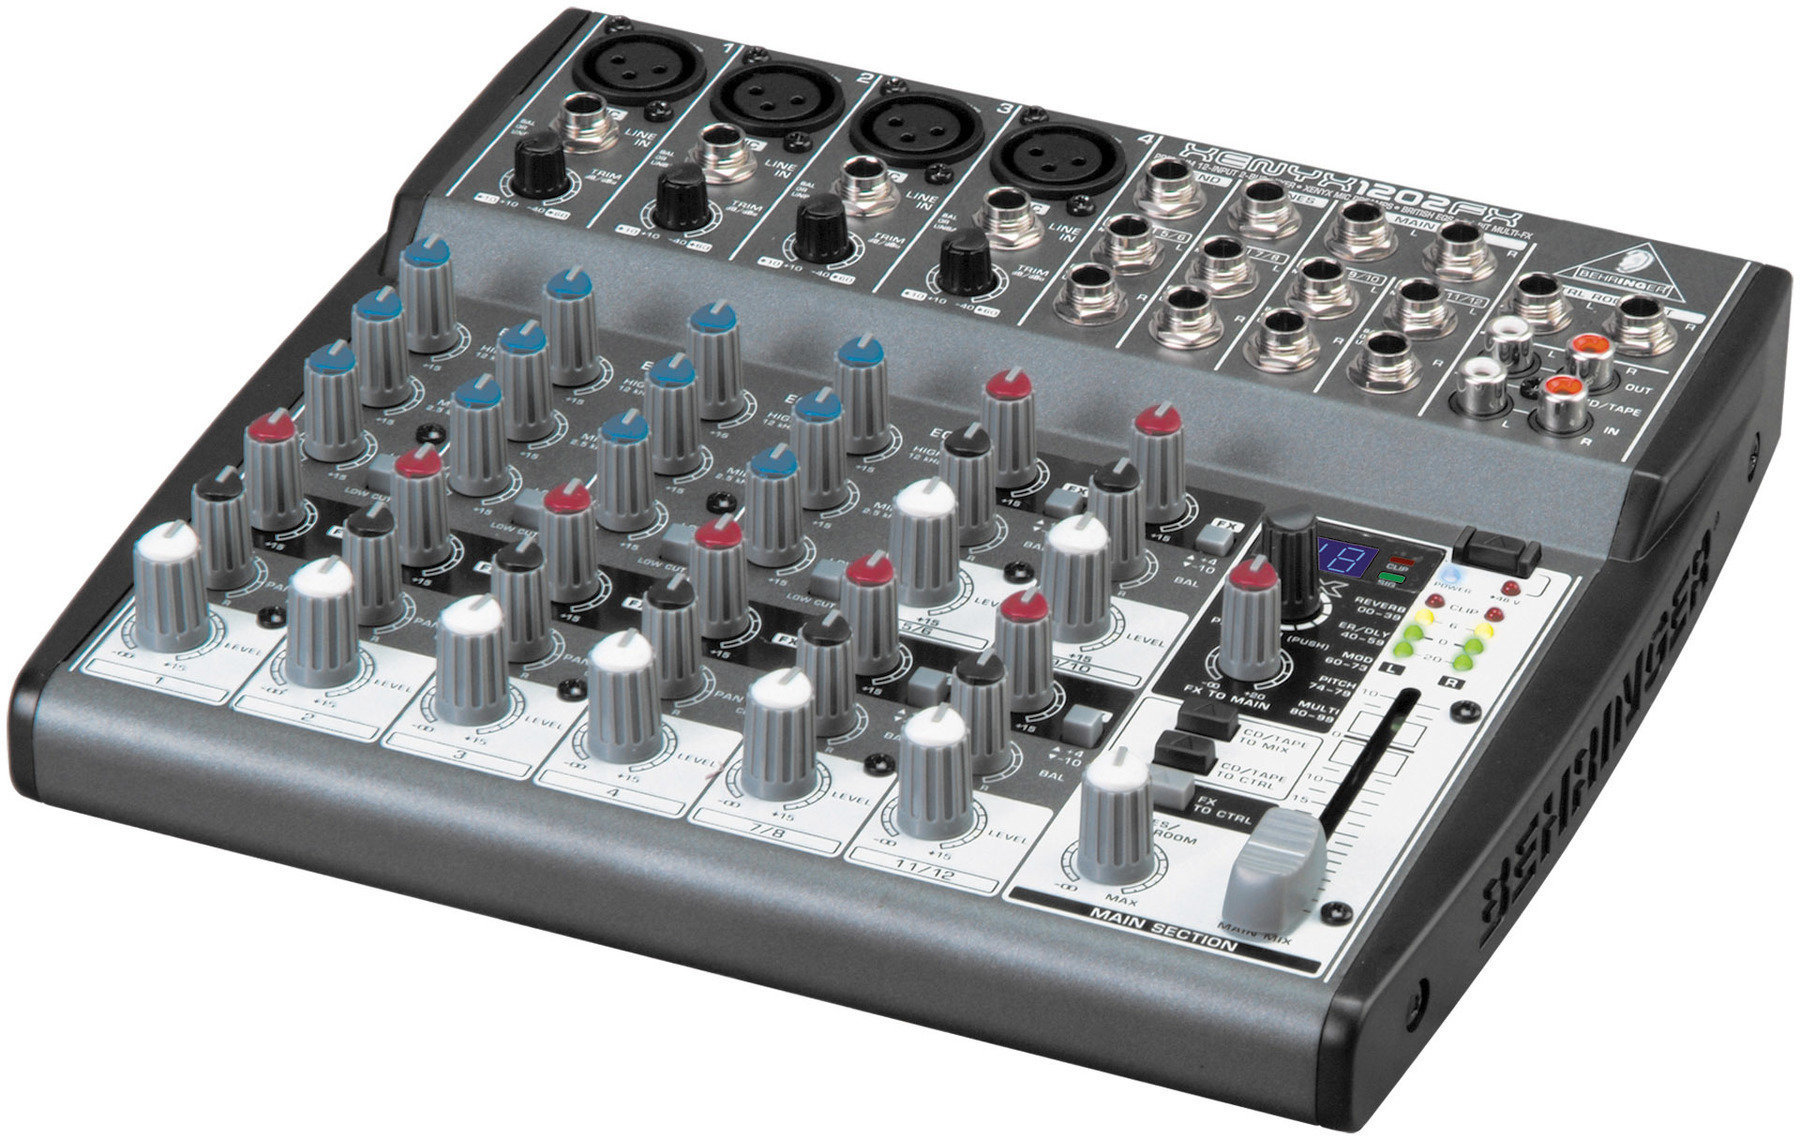 Table de mixage analogique Behringer XENYX 1202 FX